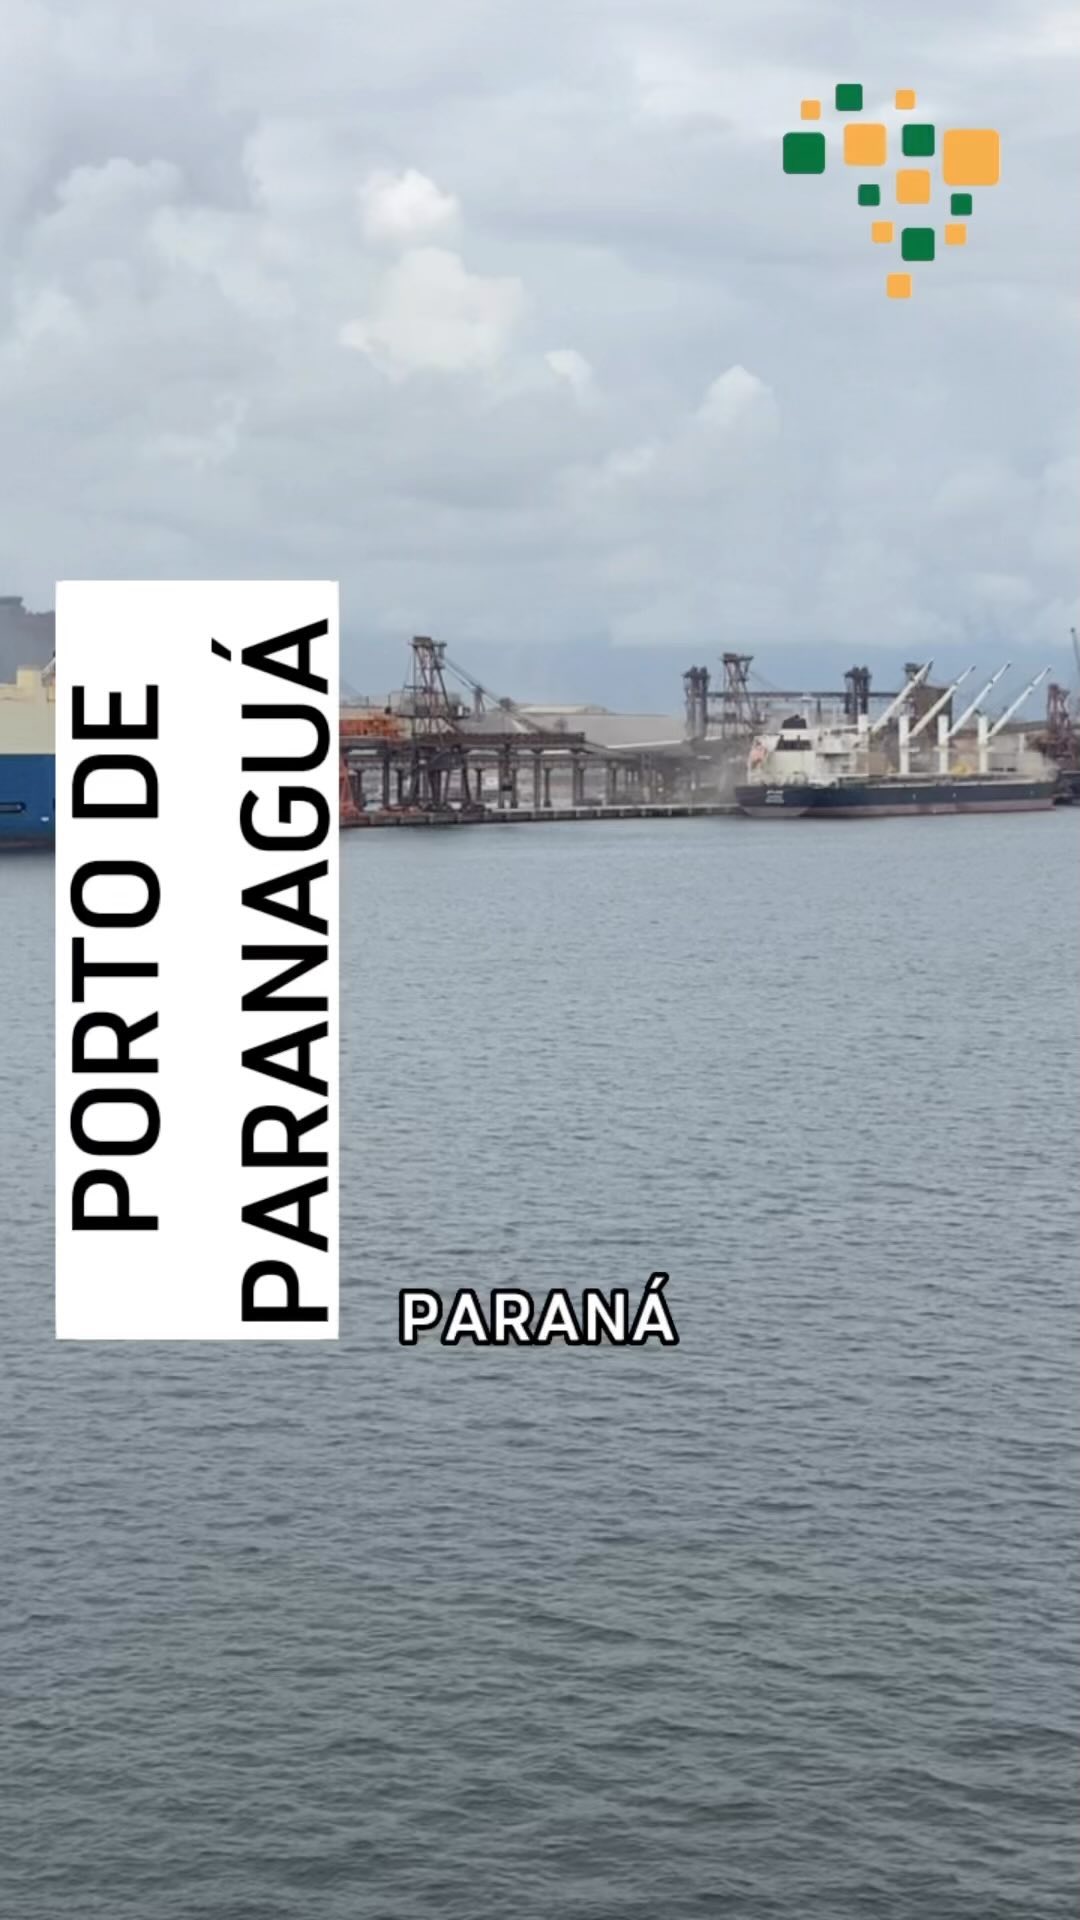 1678880610 89 Aproximacao no Porto de Paranagua a bordo do NDM Bahia